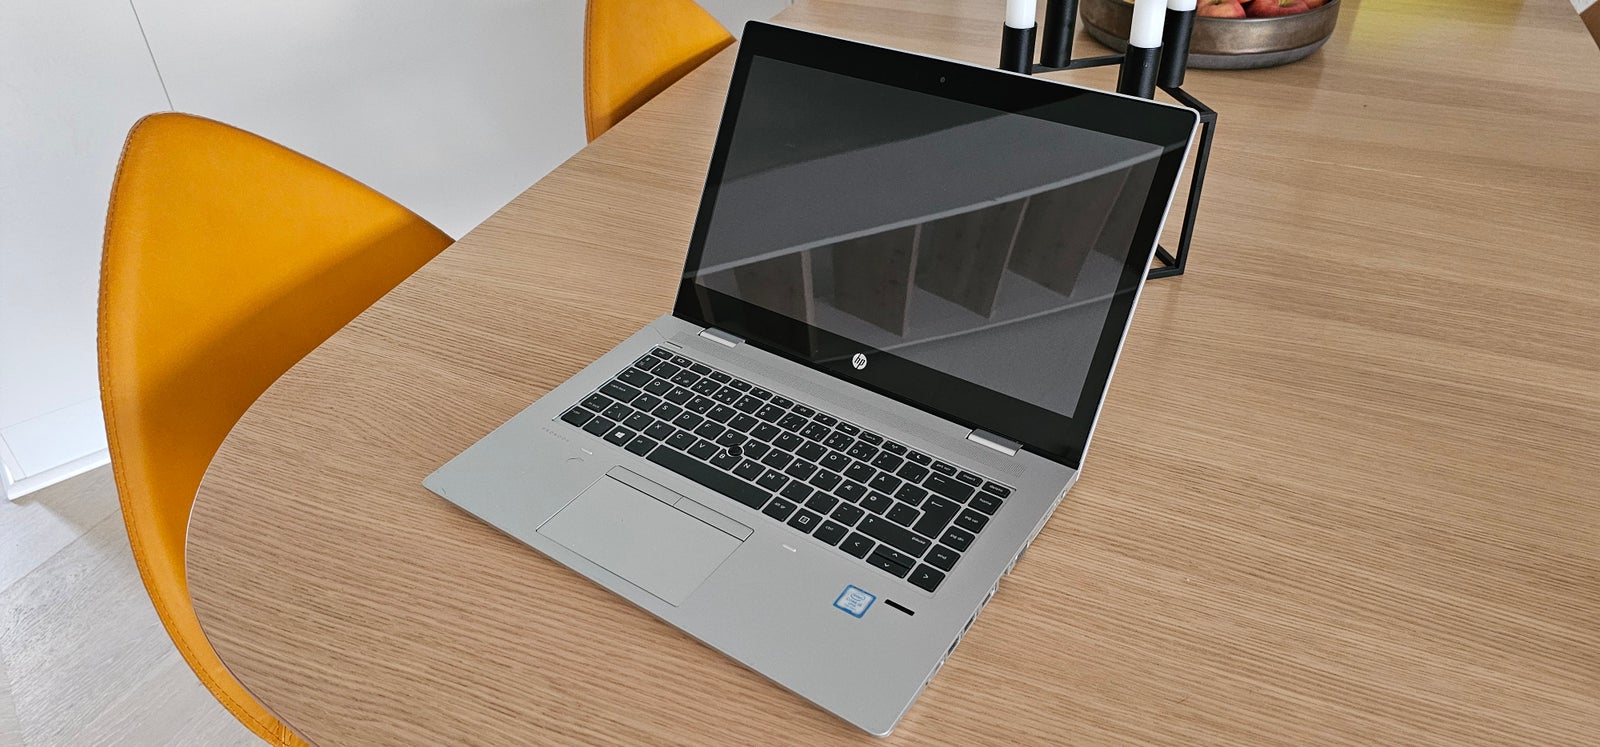 HP ProBook 640 G4, Intel(R) Core(TM) i5-7300U CPU @ 2.60GHz